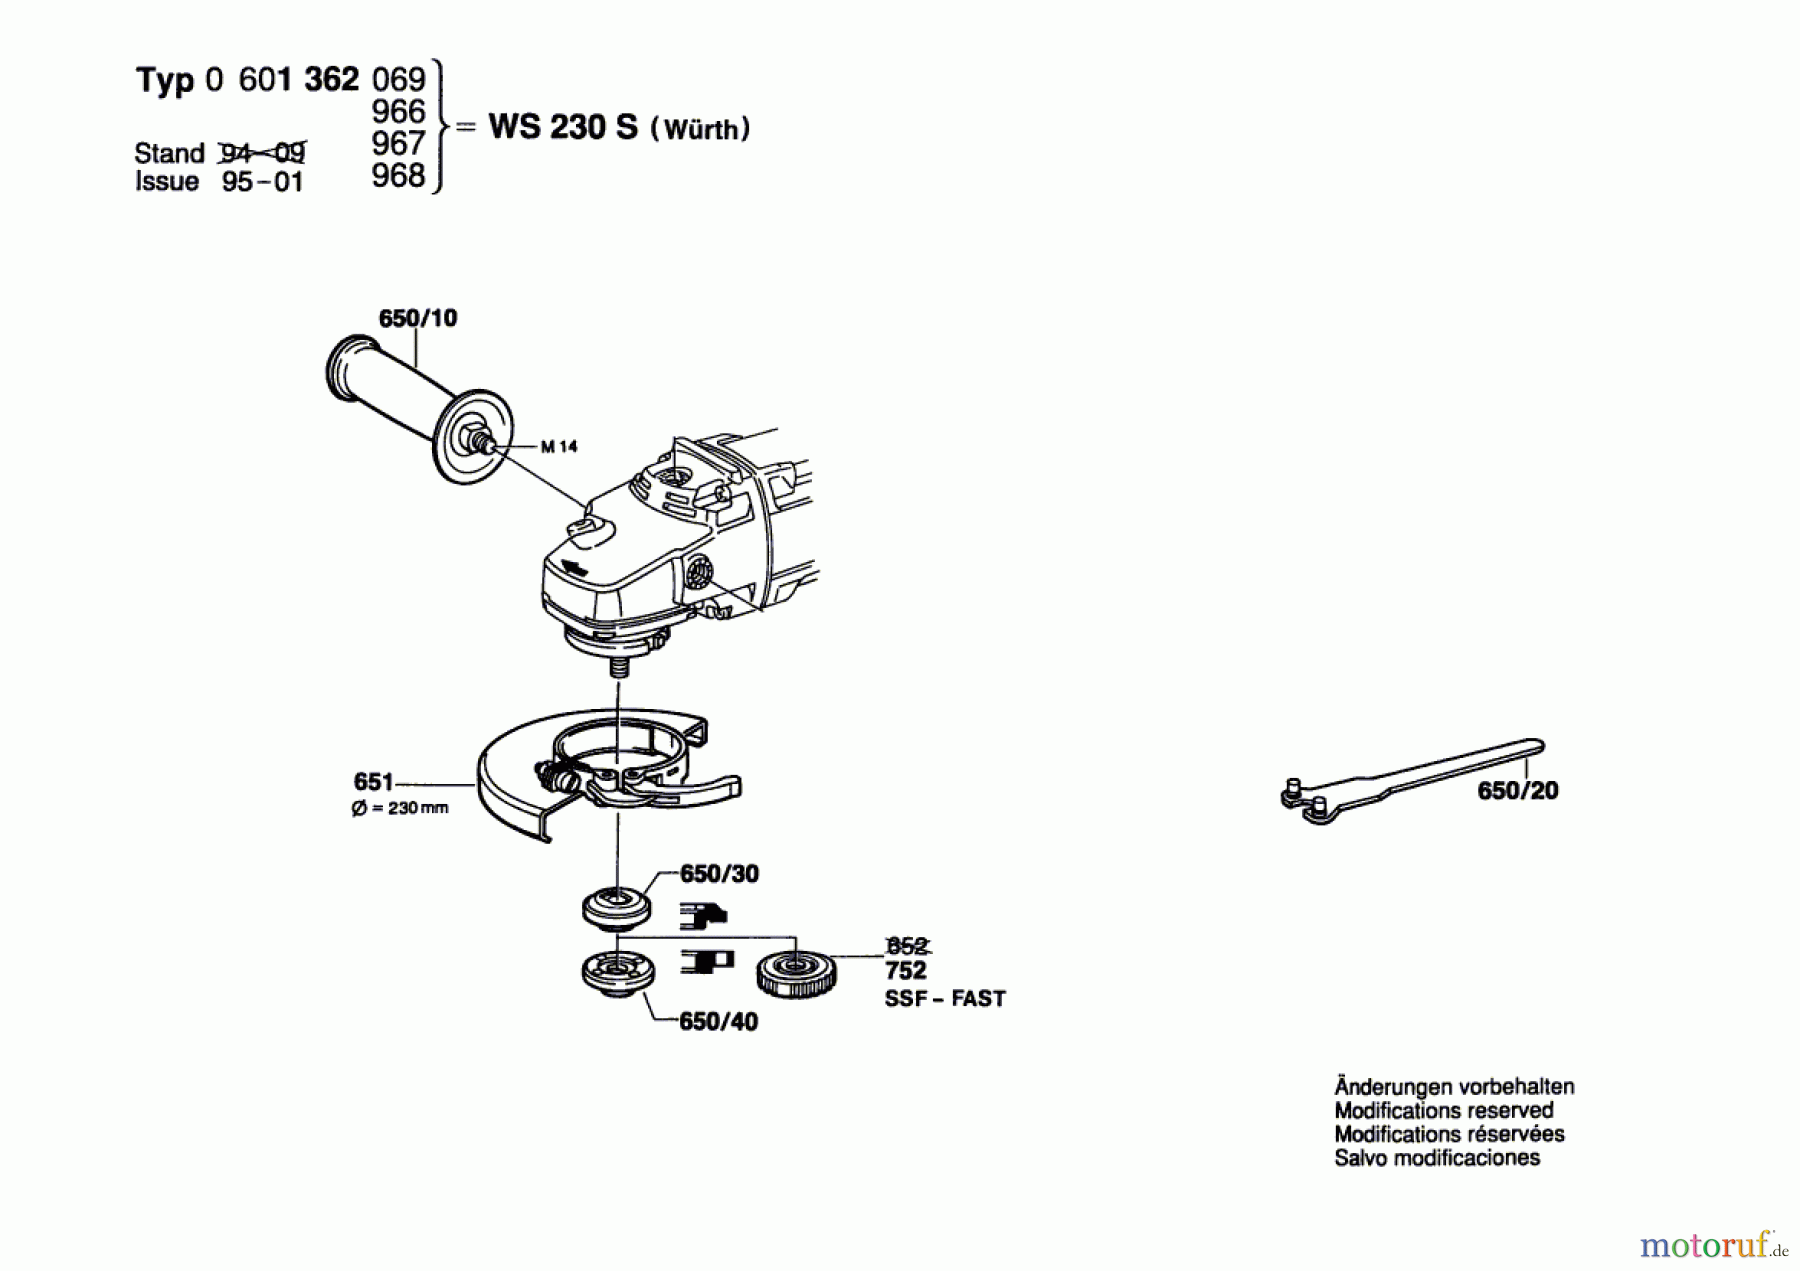  Bosch Werkzeug Winkelschleifer WS 230 S Seite 2